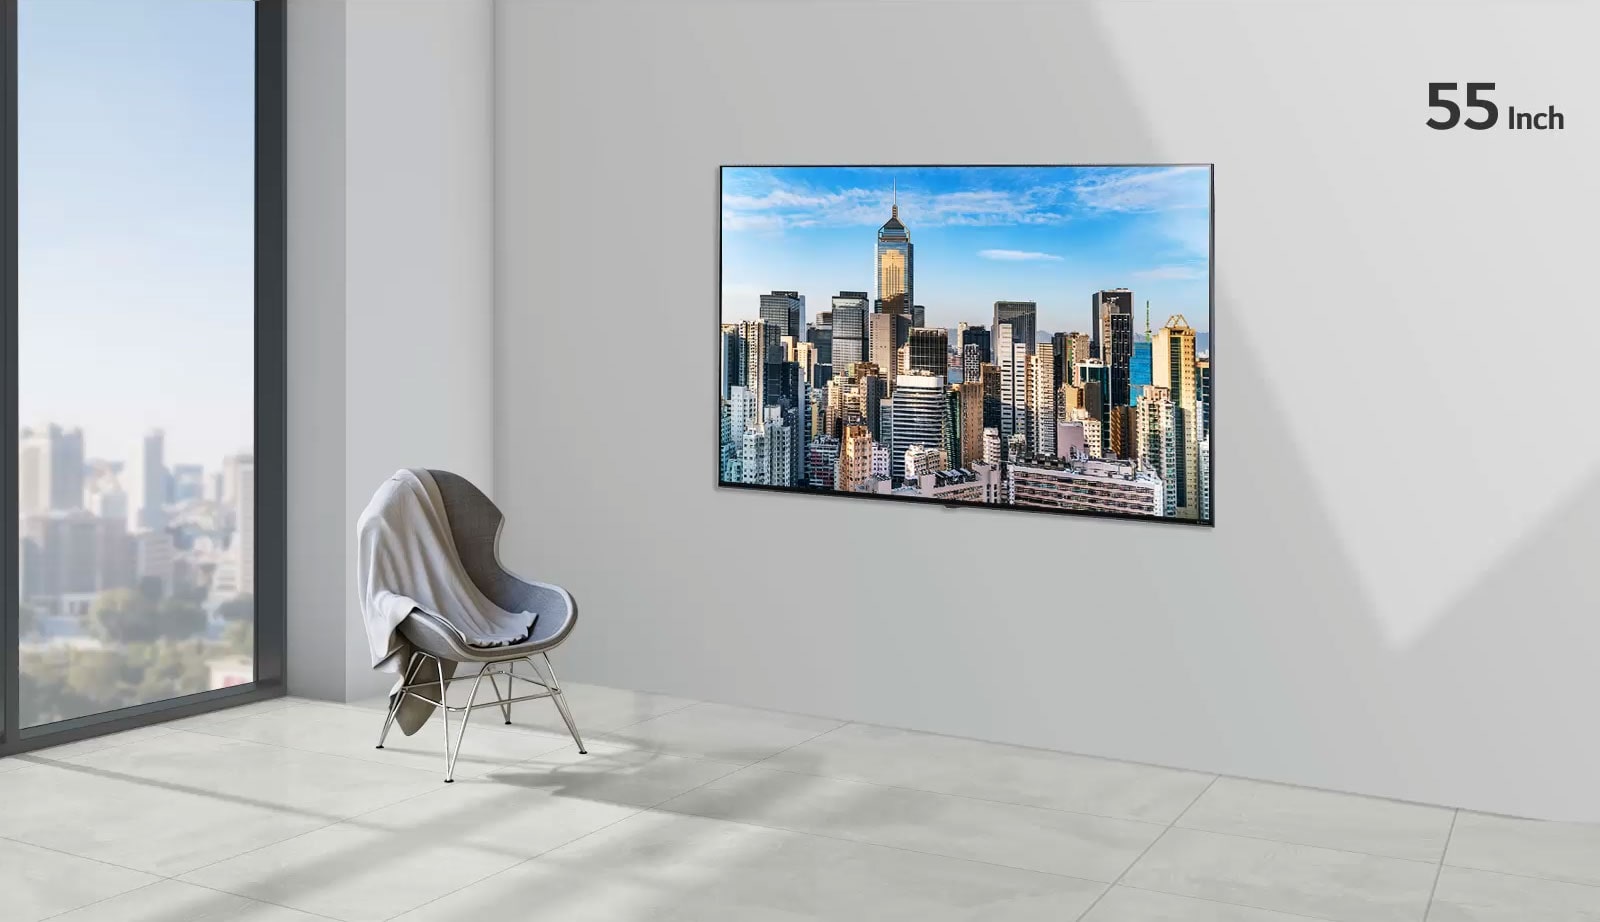 شاشة تلفاز مسطحة مثبتة على جدار رمادي بجوار نافذة من الأرض إلى السقف وكرسي.  تعرض الشاشة منظرًا للمدينة مقابل السماء الزرقاء ويزداد حجم التلفاز من 55 بوصة إلى 86 بوصة. 